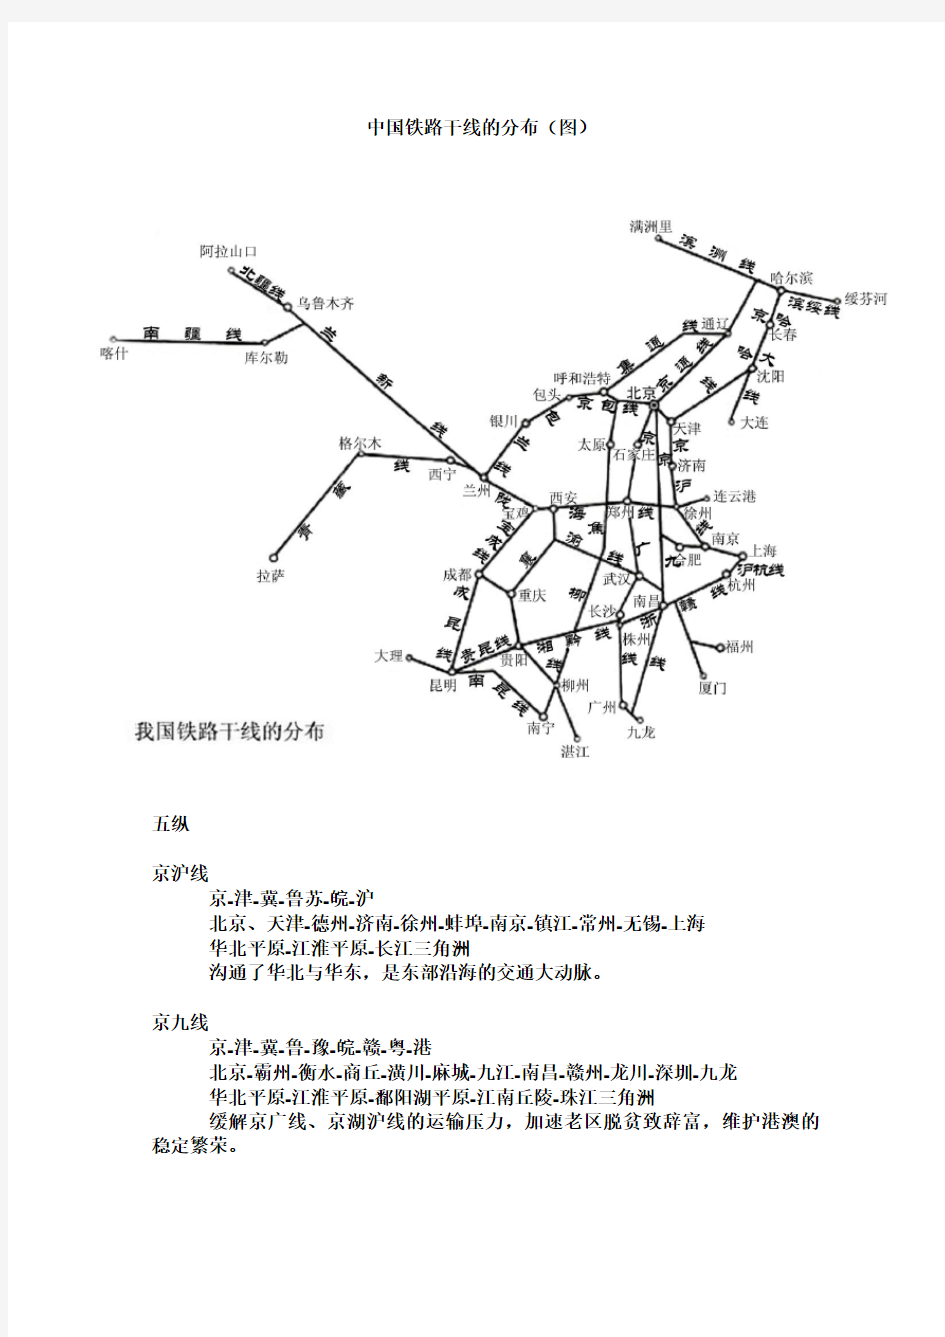 中国铁路干线的分布(图)